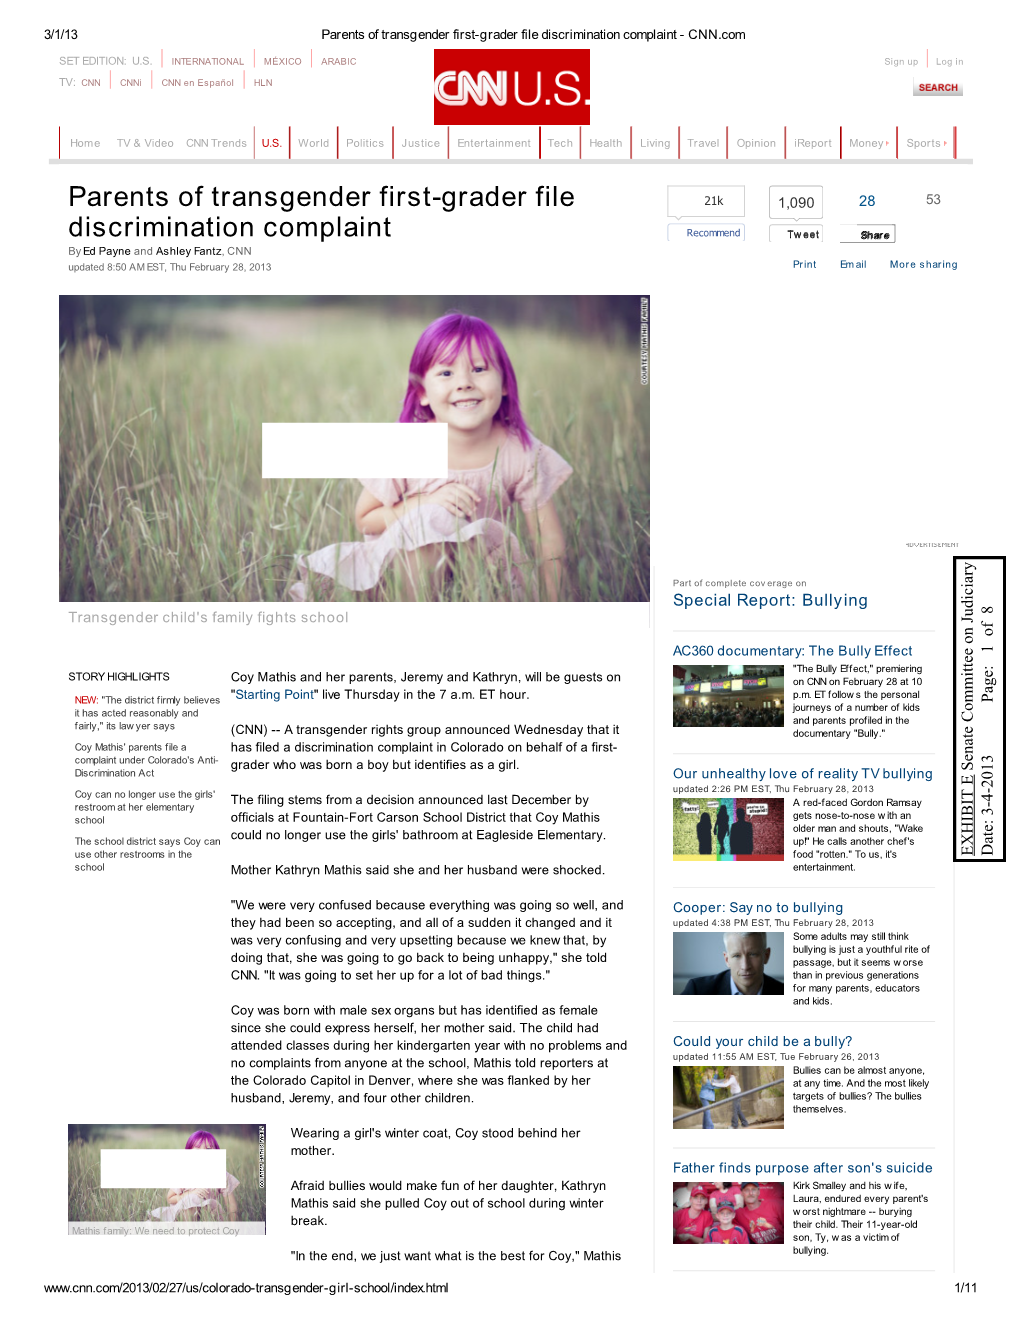 Parents of Transgender First-Grader File Discrimination Complaint - CNN.Com